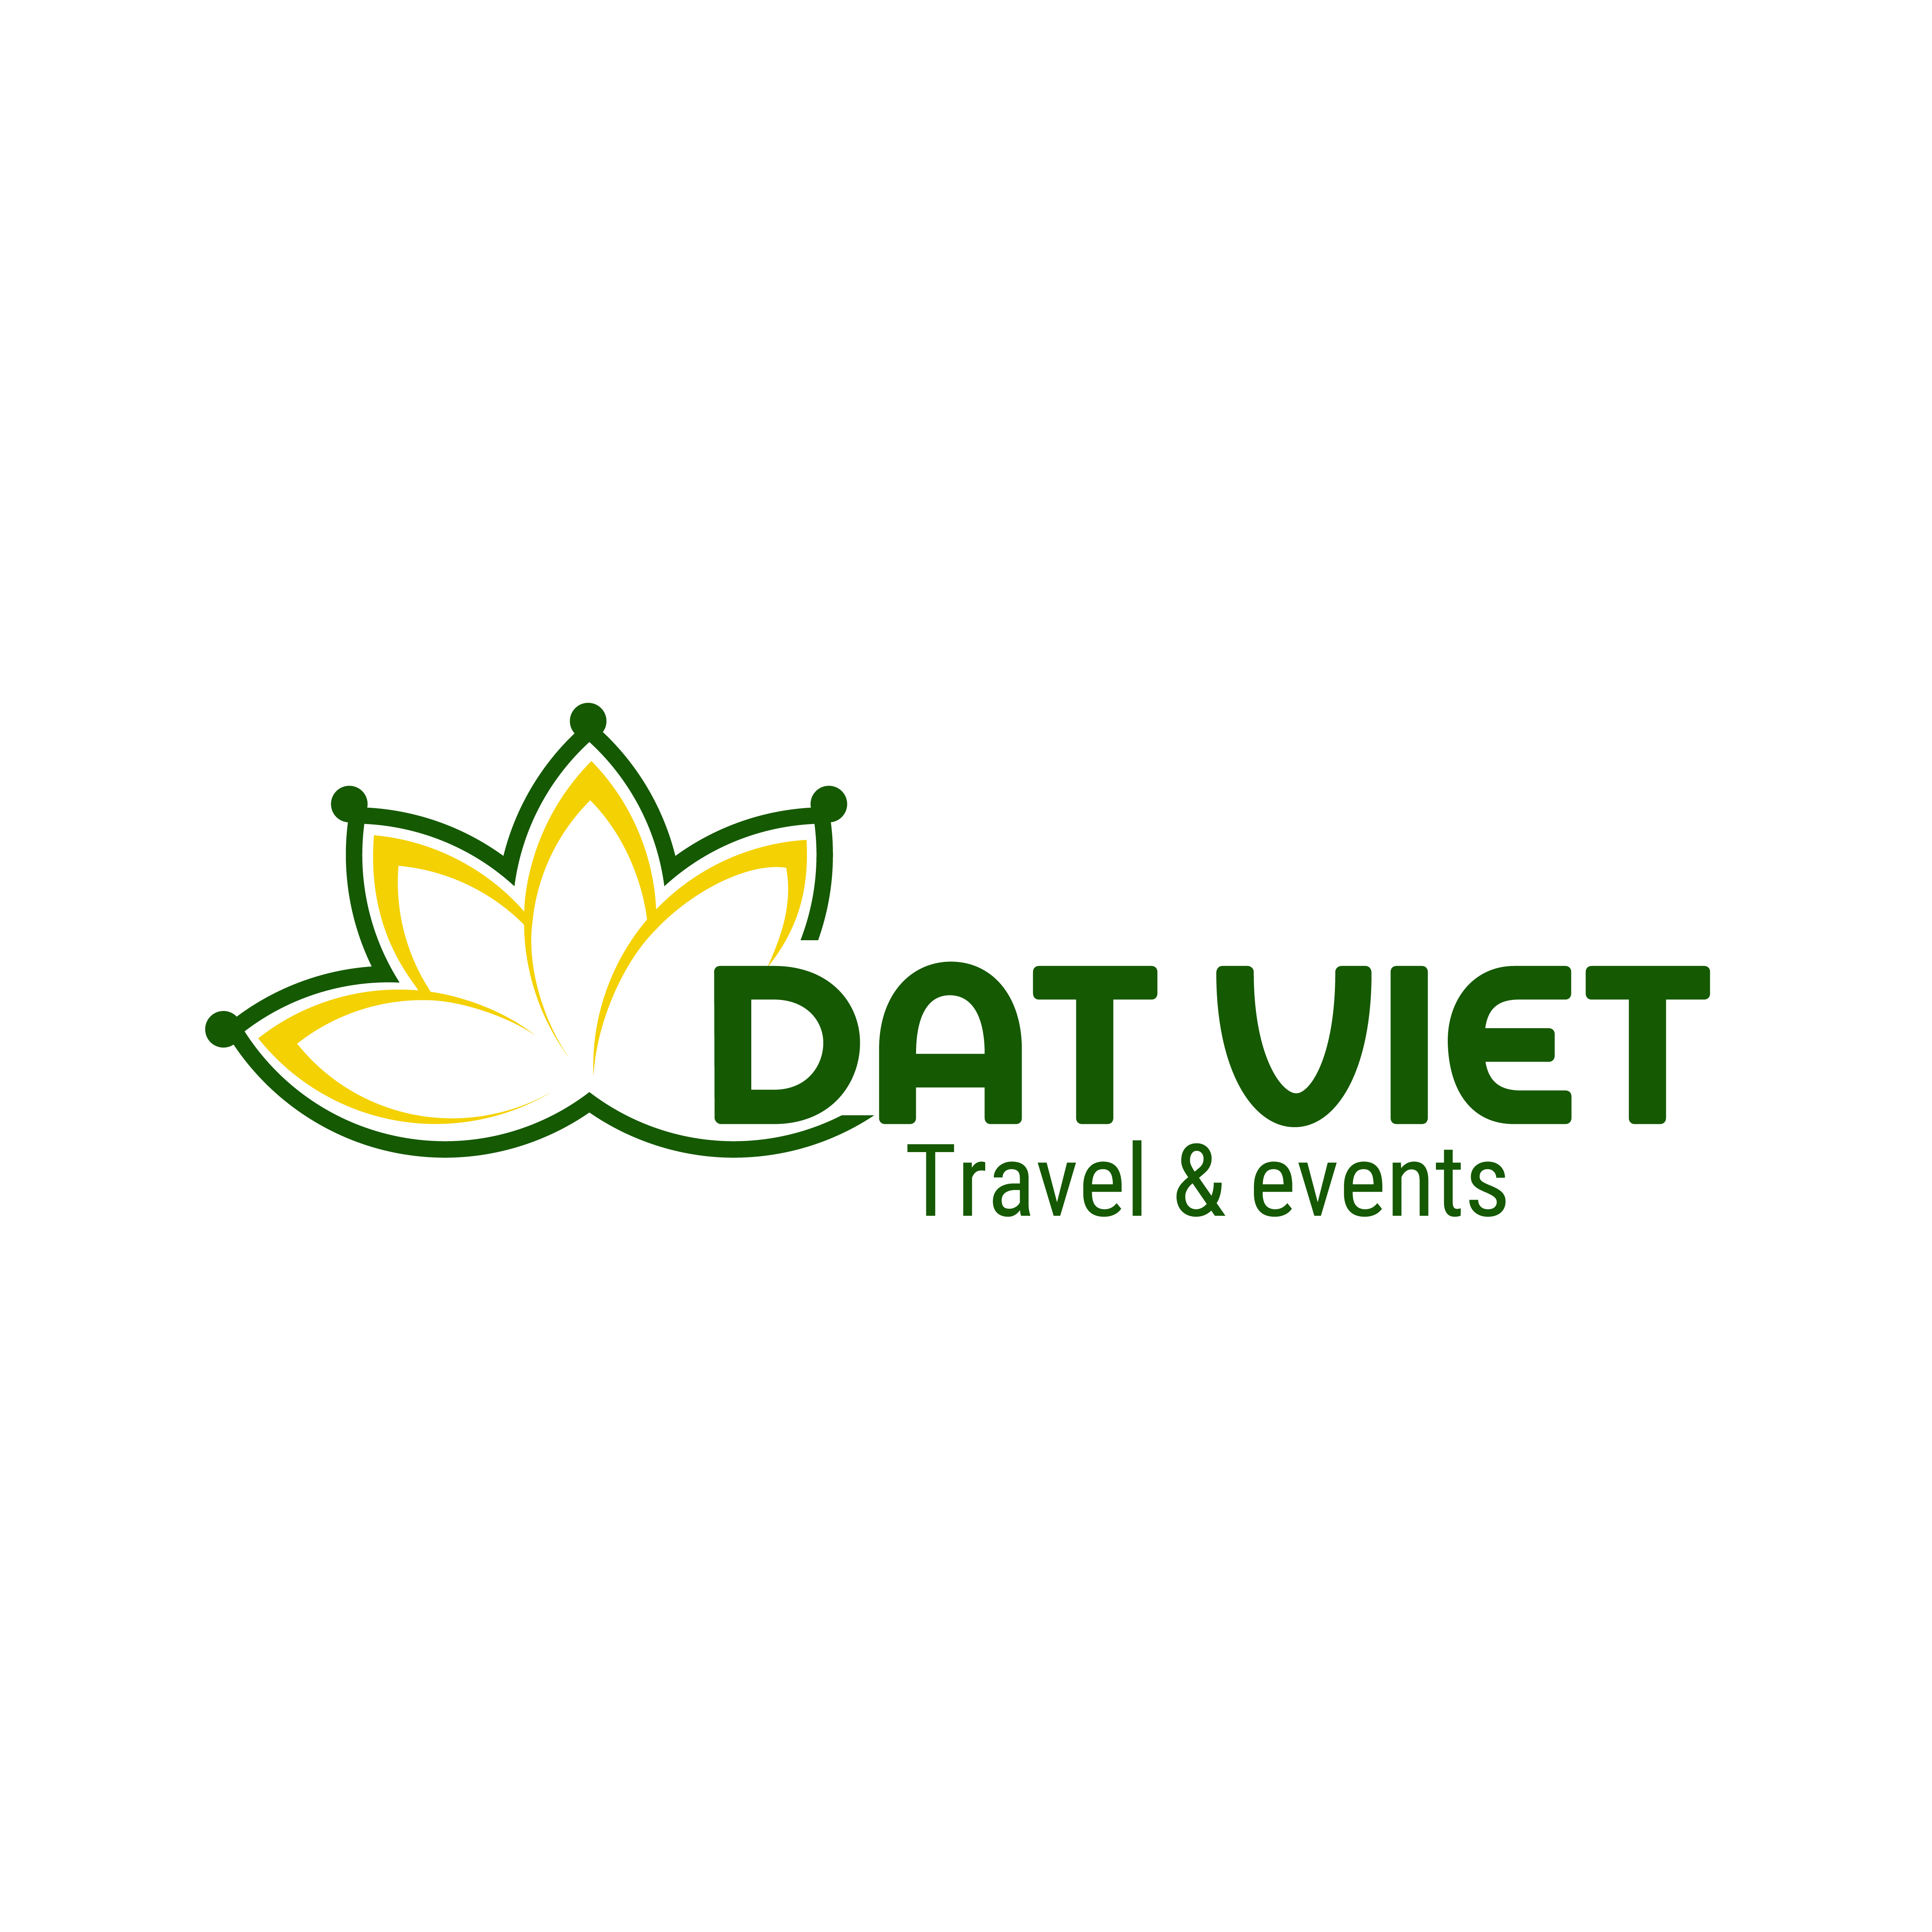 Thiết kế logo công ty du lịch